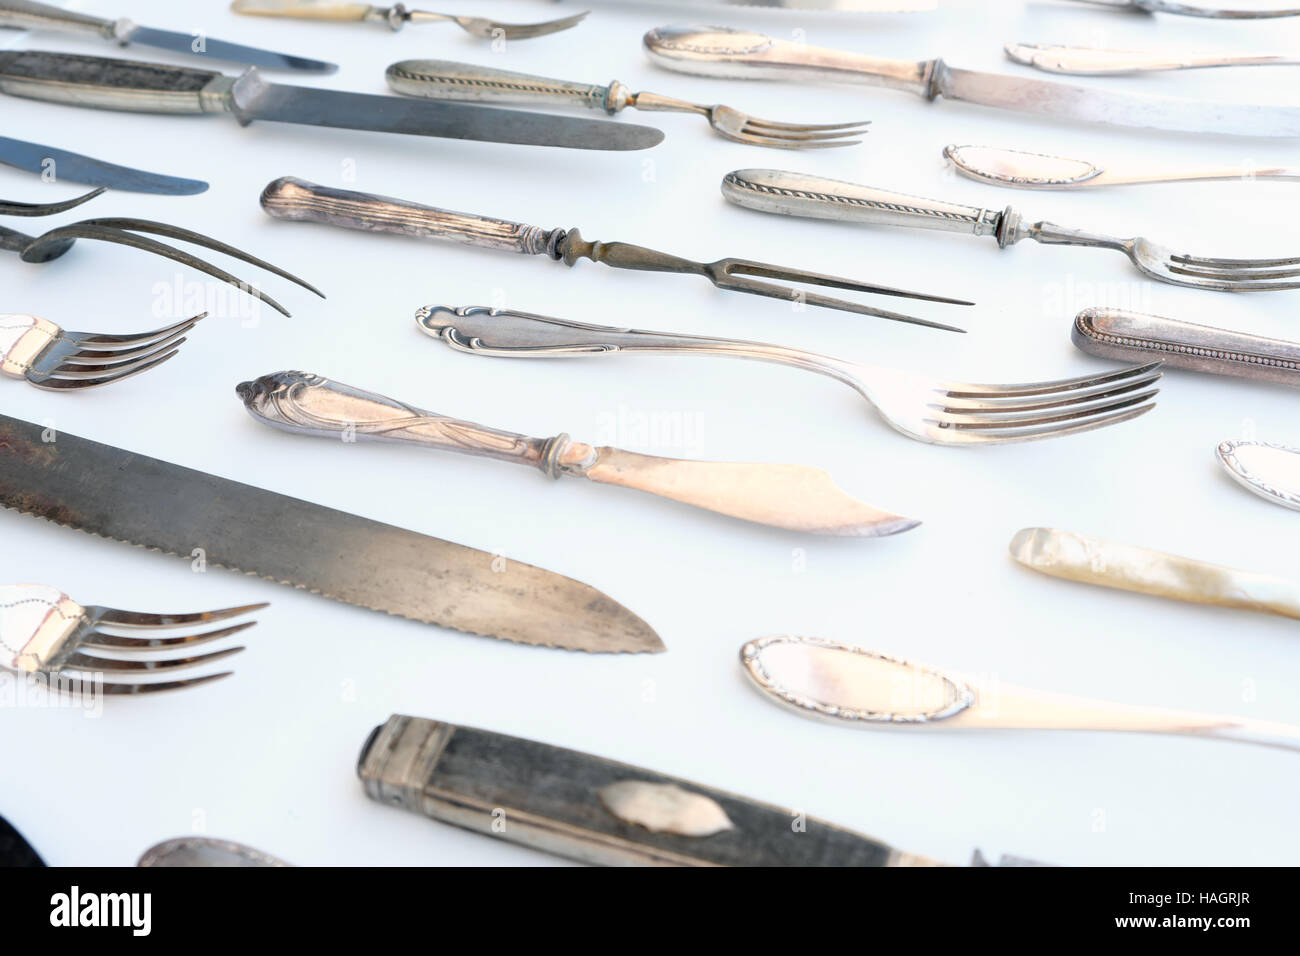 Cuchillo y tenedor patrón - vintage Hermoso vajilla, cubertería de plata Foto de stock